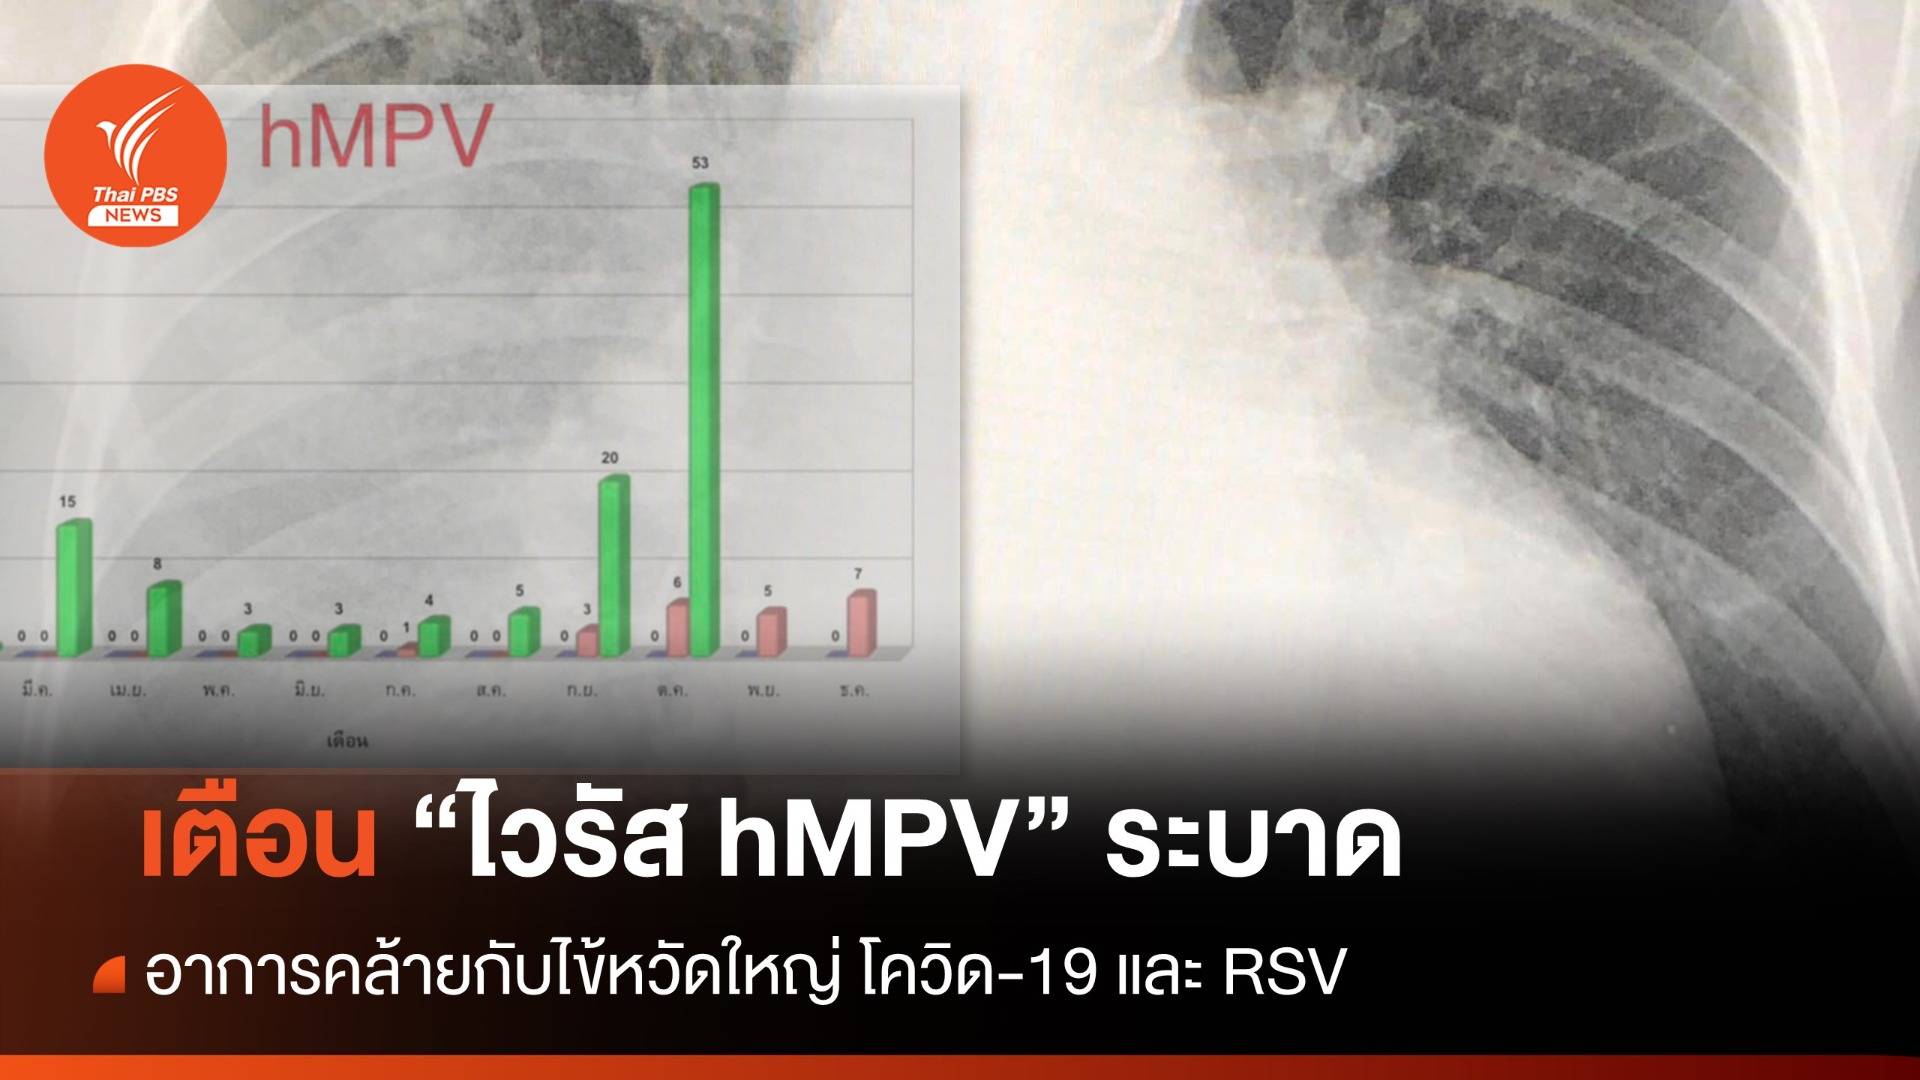 "หมอมนูญ" เตือน "ไวรัส hMPV" ระบาด อาการคล้าย "ไข้หวัดใหญ่ - โควิด - RSV"